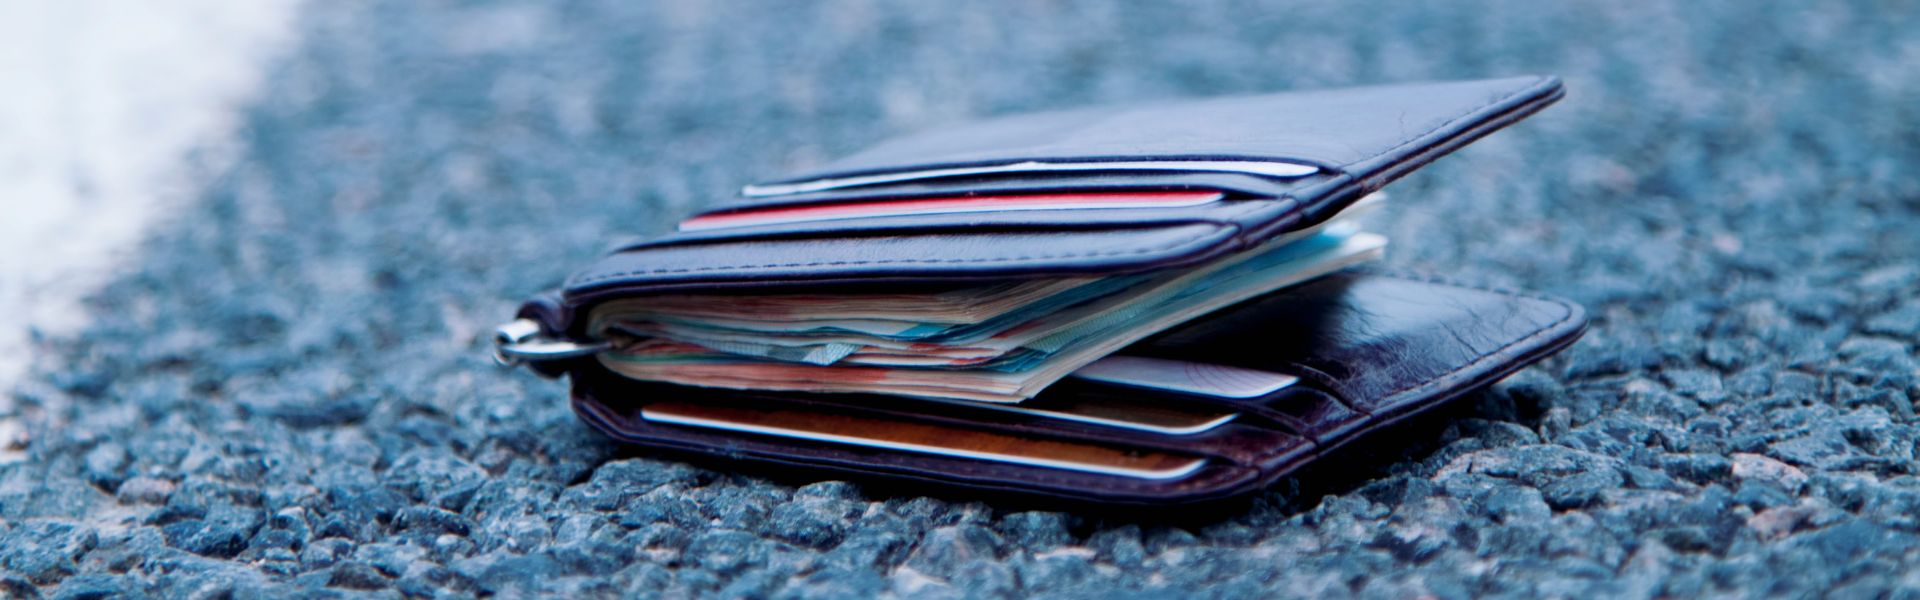 Nahaufnahme eines auf dem Gehweg liegenden Geldbeutels, gefüllt mit Banknoten unterschiedlicher Werte und verschiedener Plastikkarten.